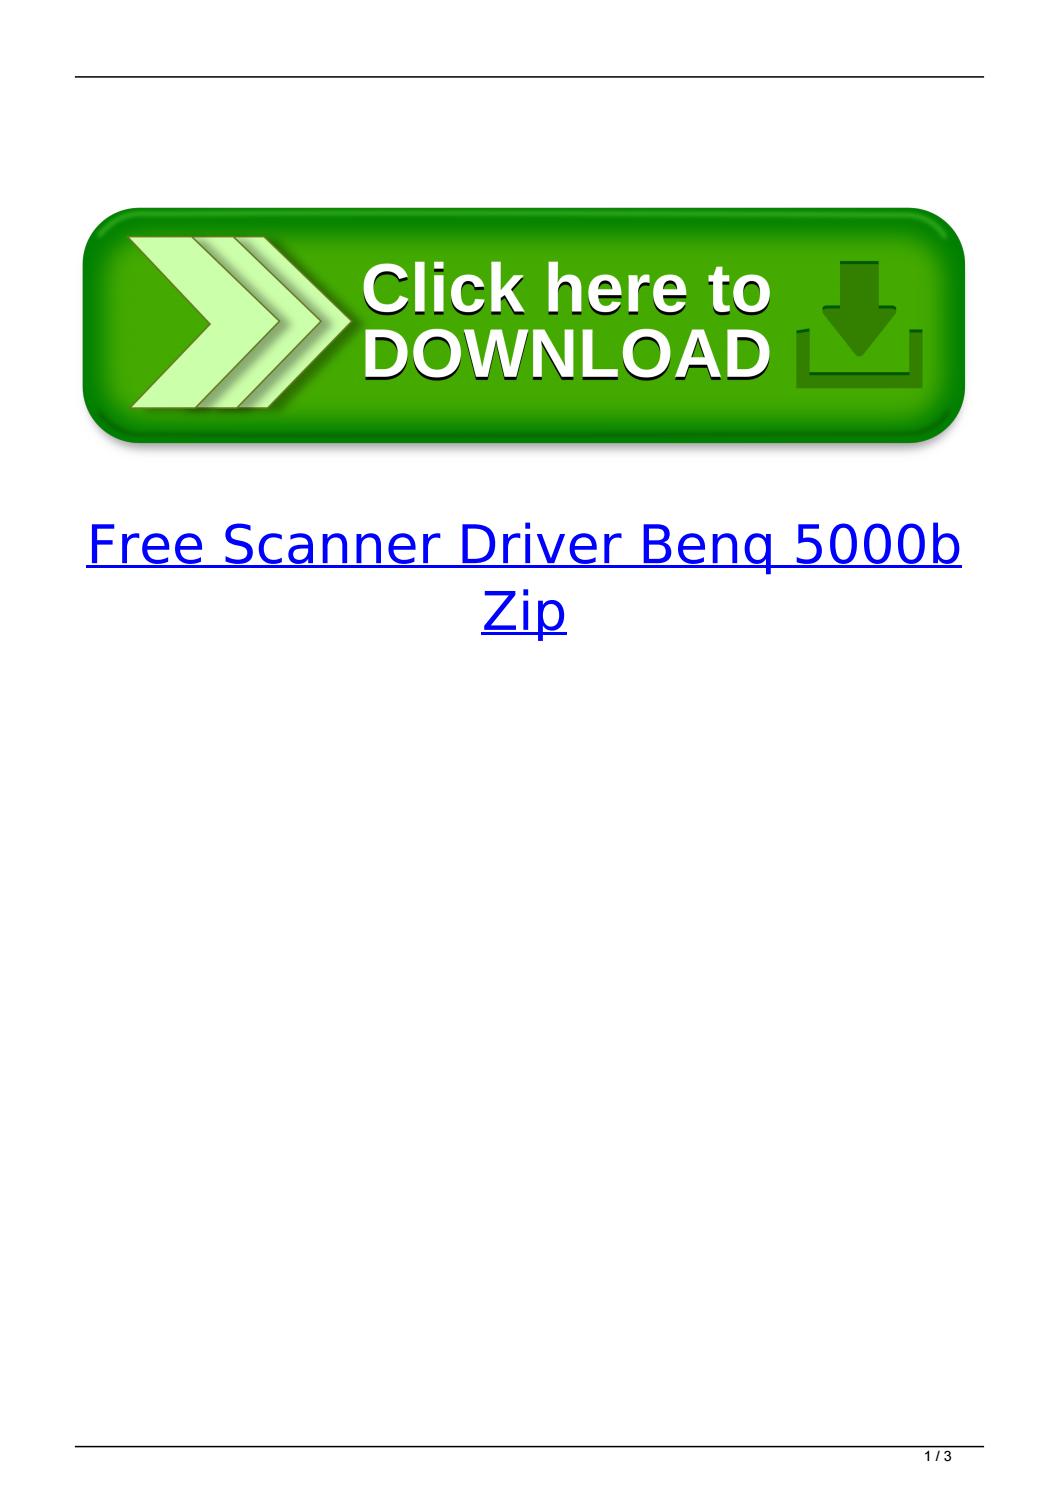 Flatbed Scanner 22 Driver Win7 Zip